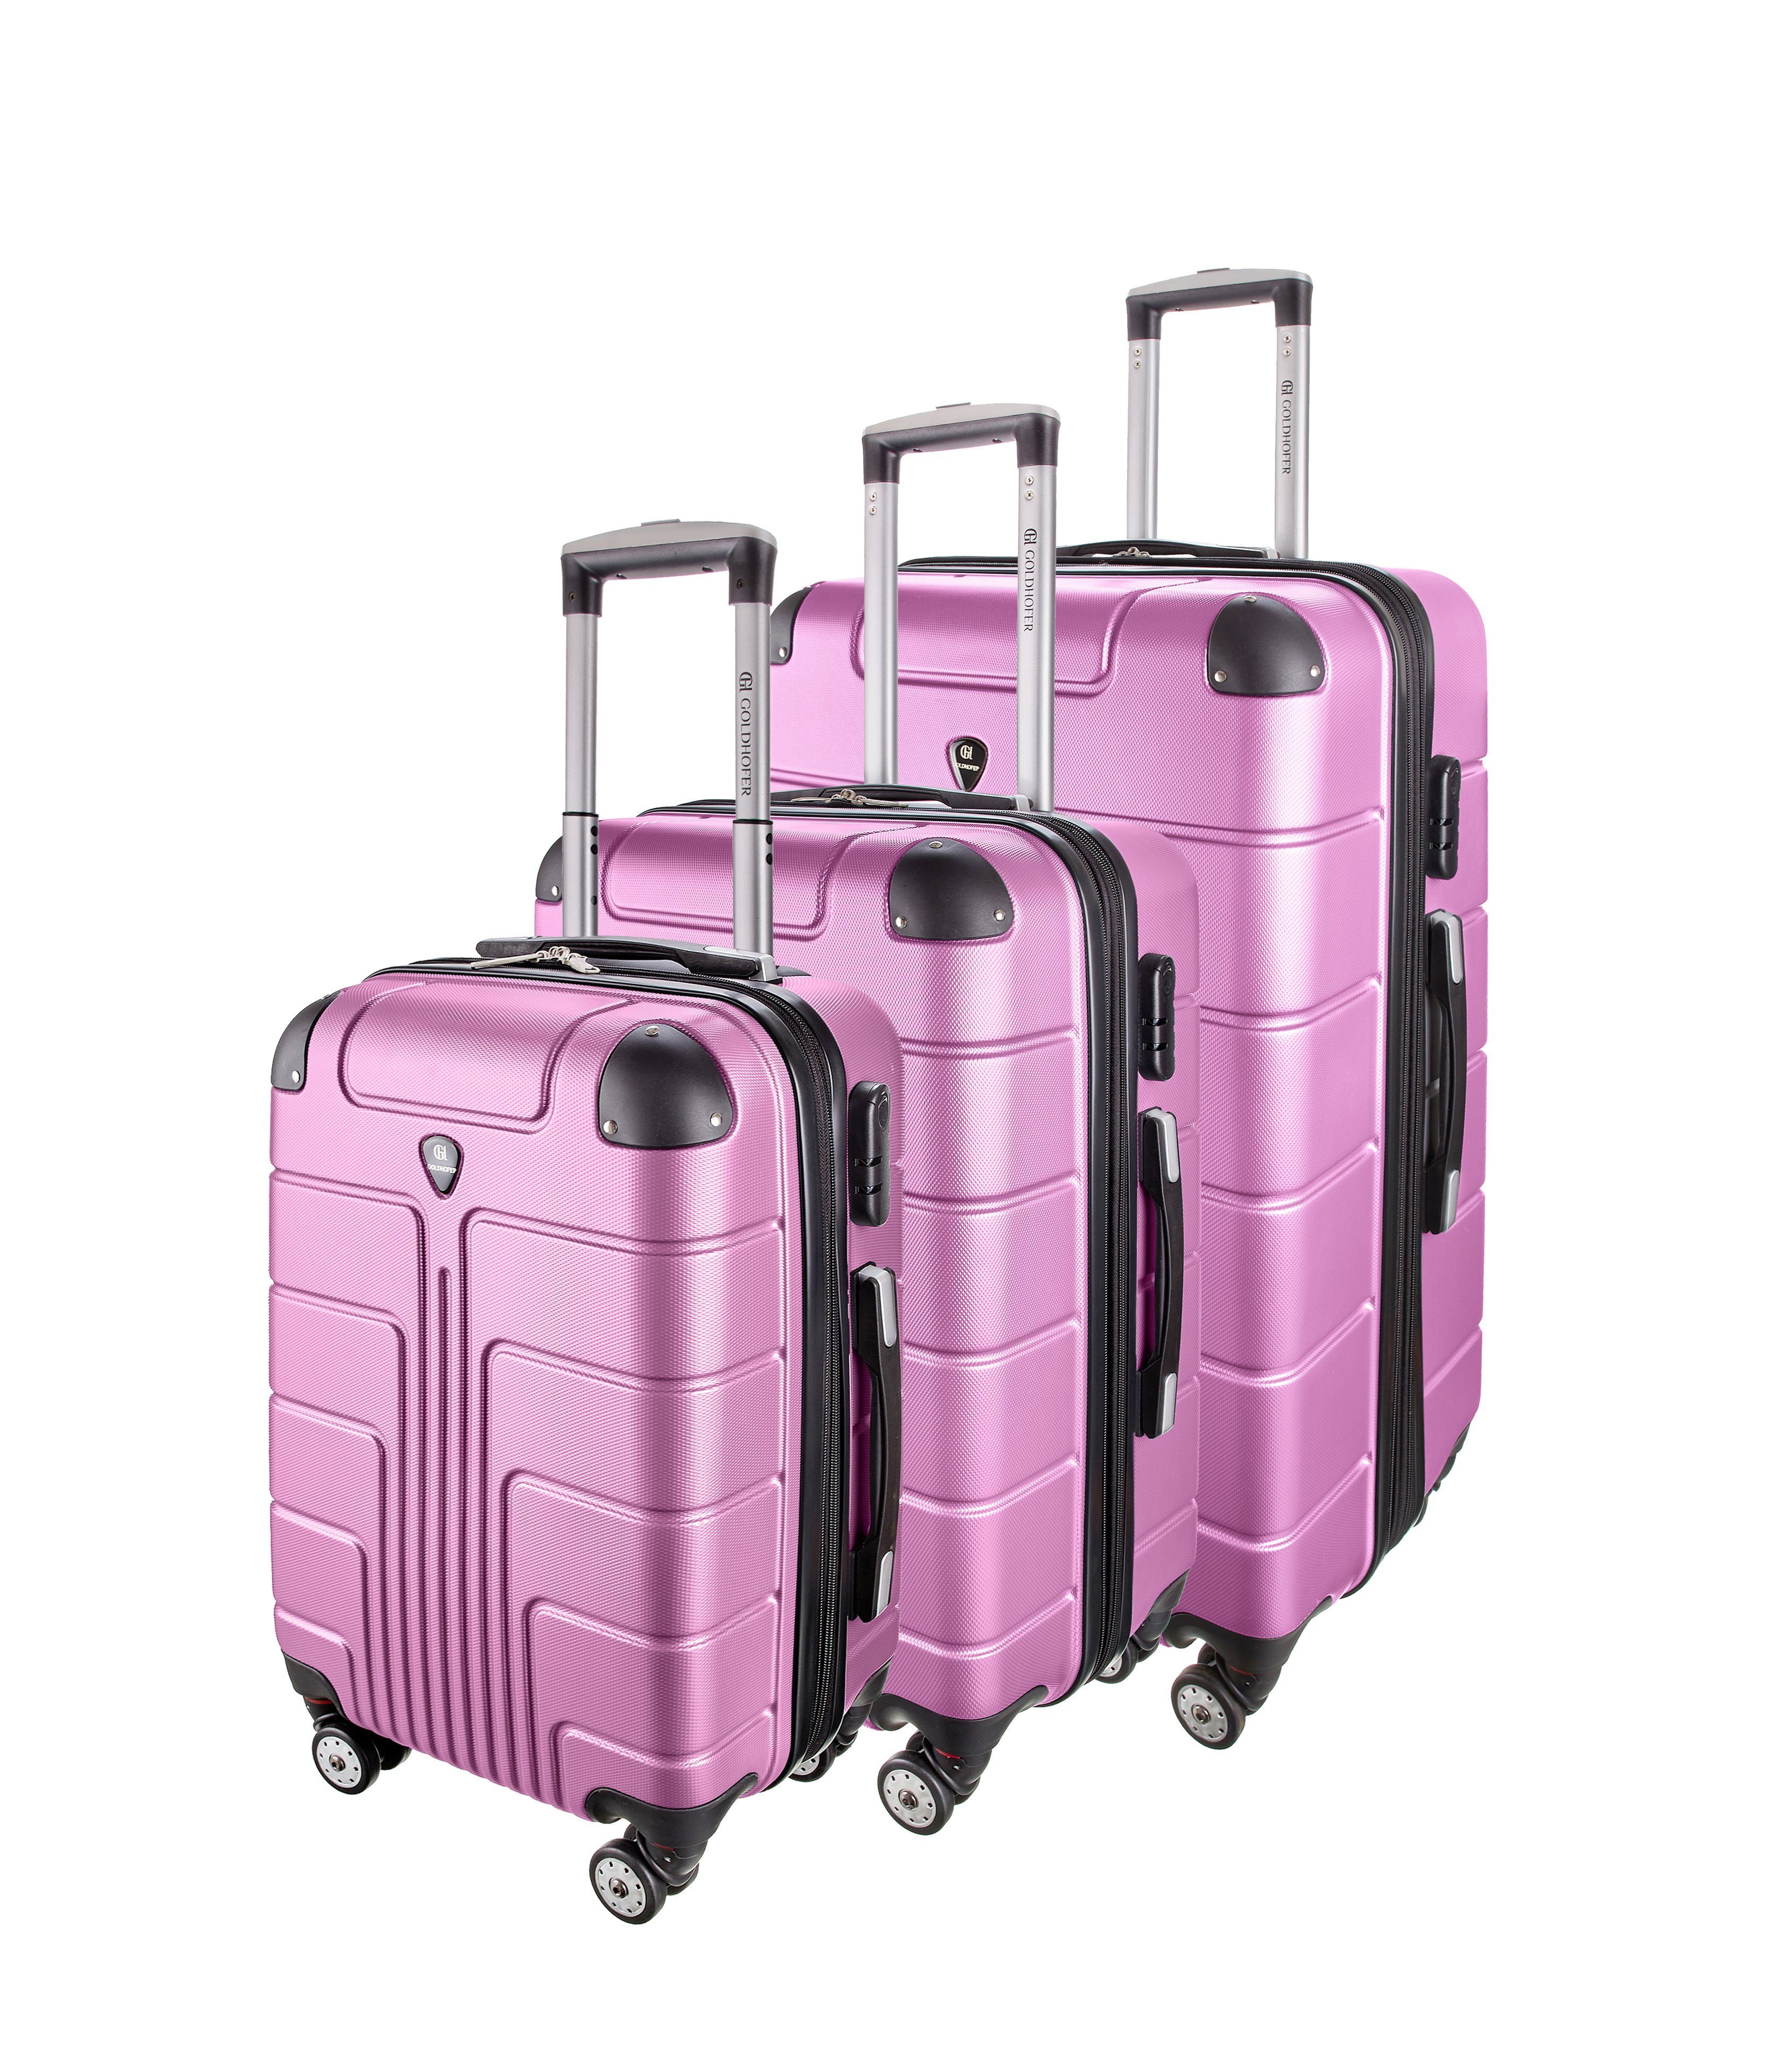 Goldhofer Kofferset verschiedene Modelle in 3 Größen & Farben mit 360° Leichtlaufrollen, (Set, 3 TLG), Außen Material ABS - Wasserabweisend Pink V1